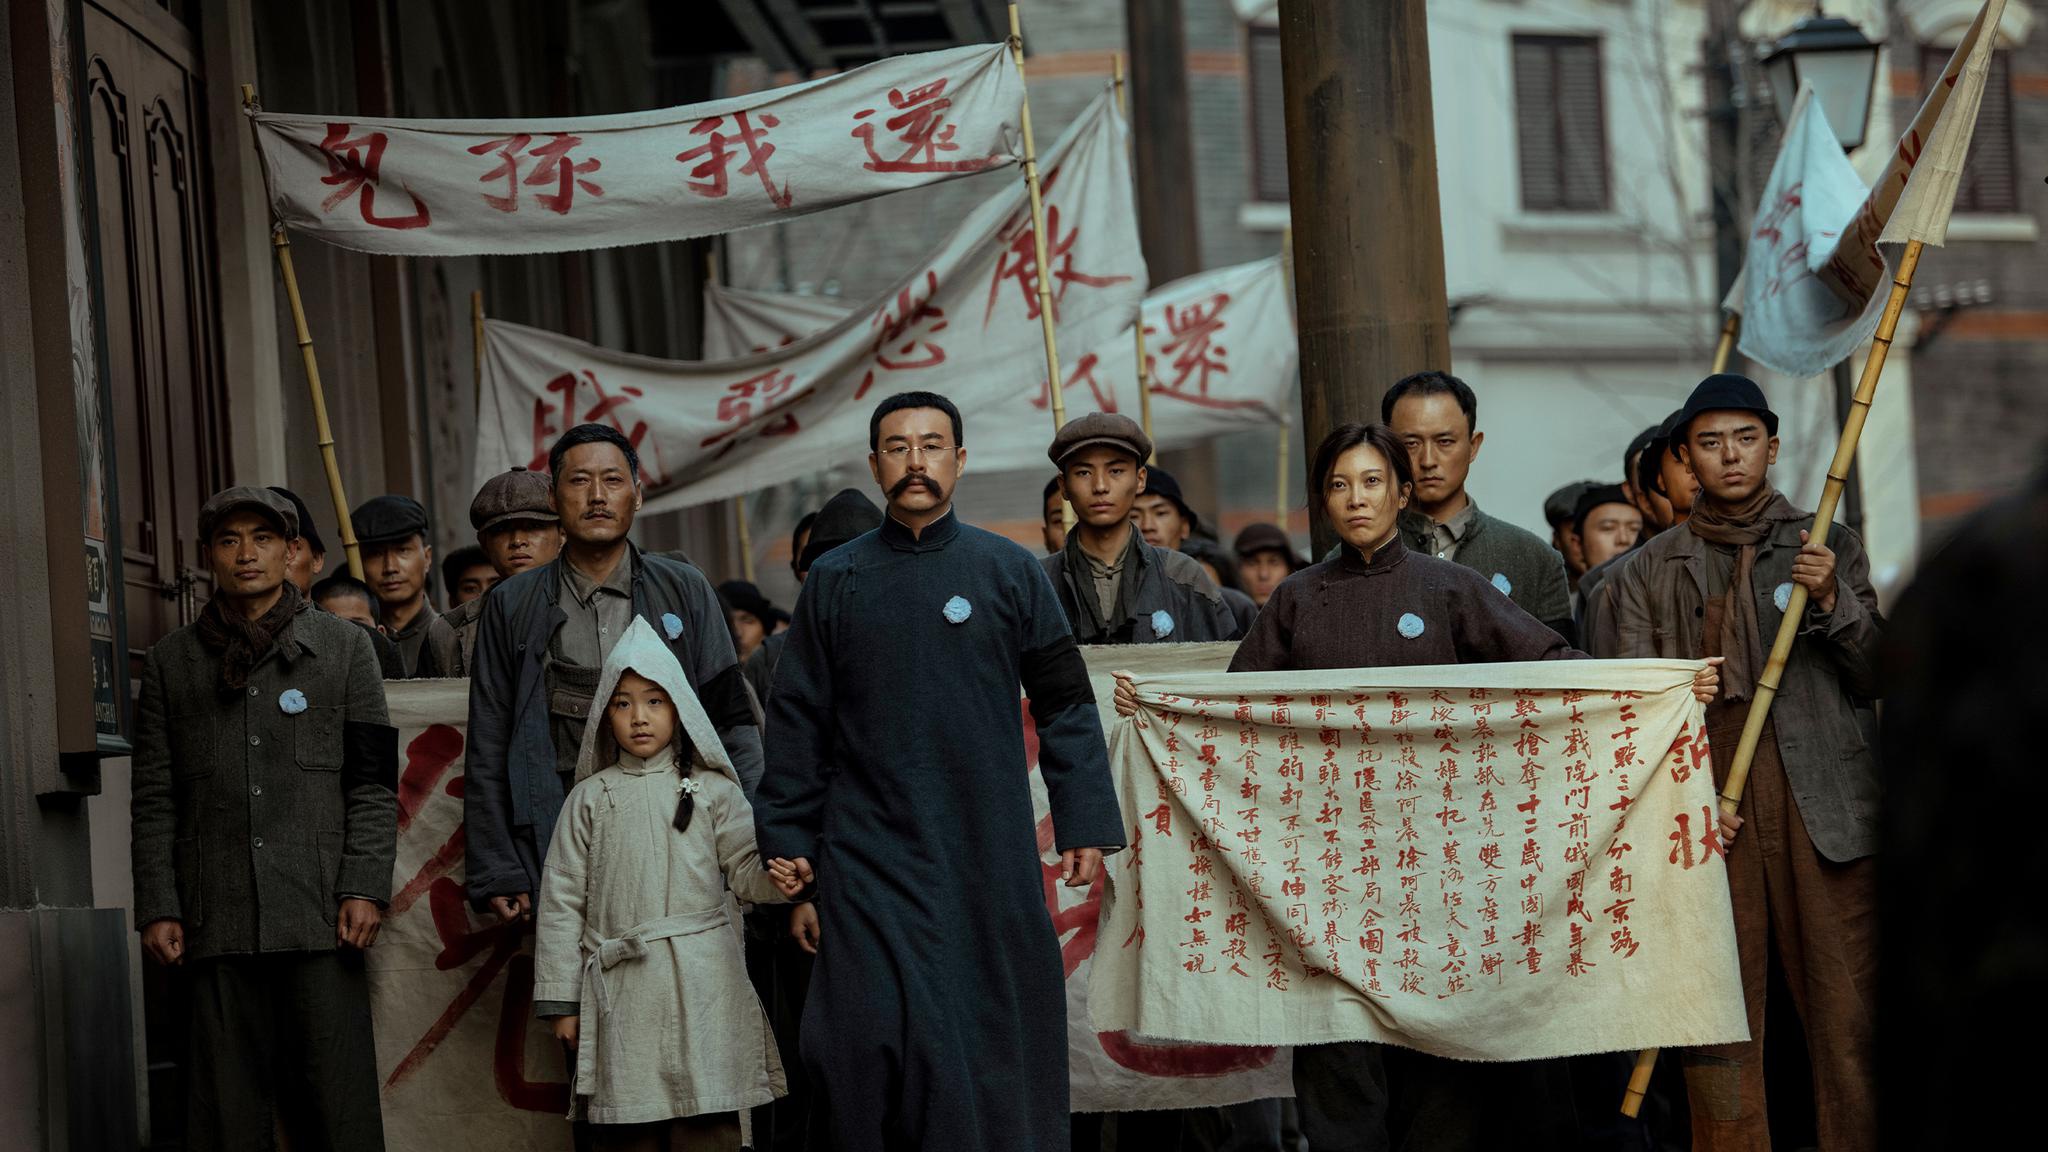 《革命者》剧照。李大钊带领着工人群众们在街上游行，抗议外国人枪杀无辜报童。